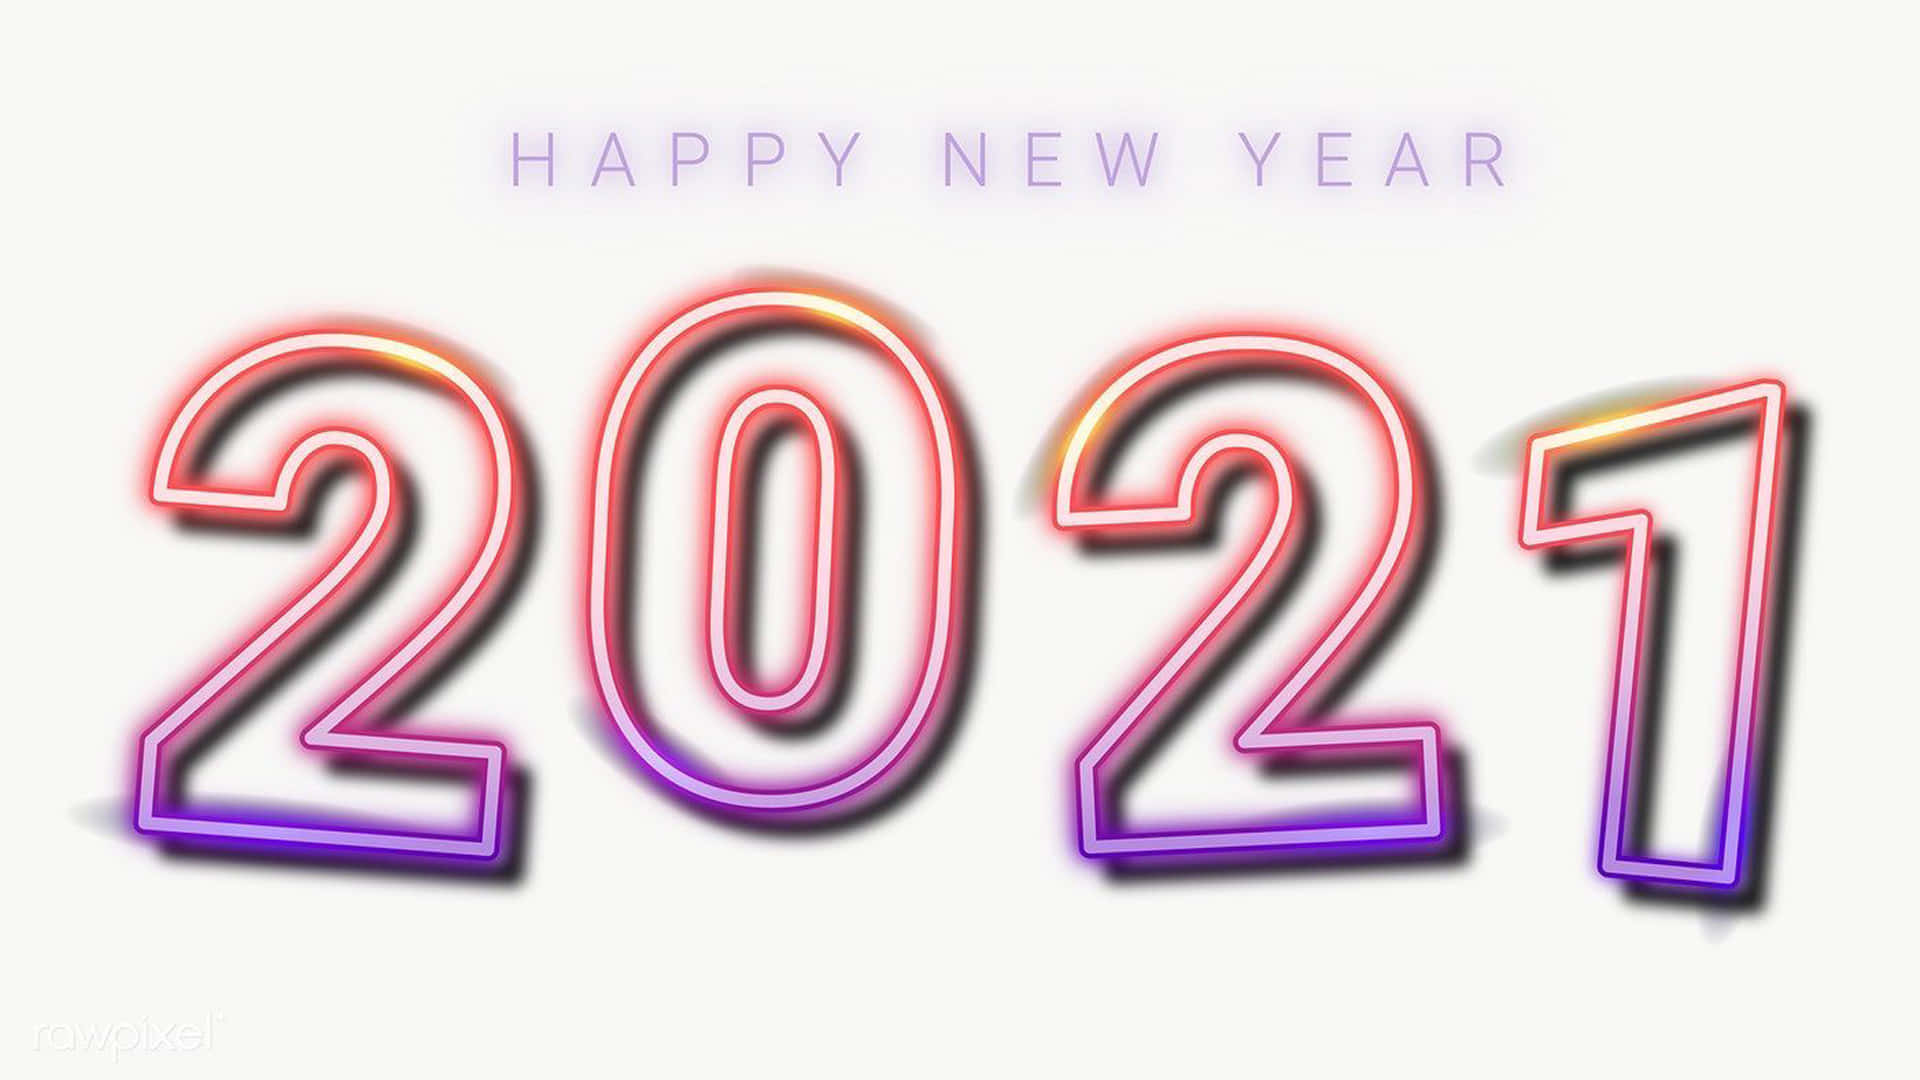 Feliceanno Nuovo 2021 - Lettere Al Neon